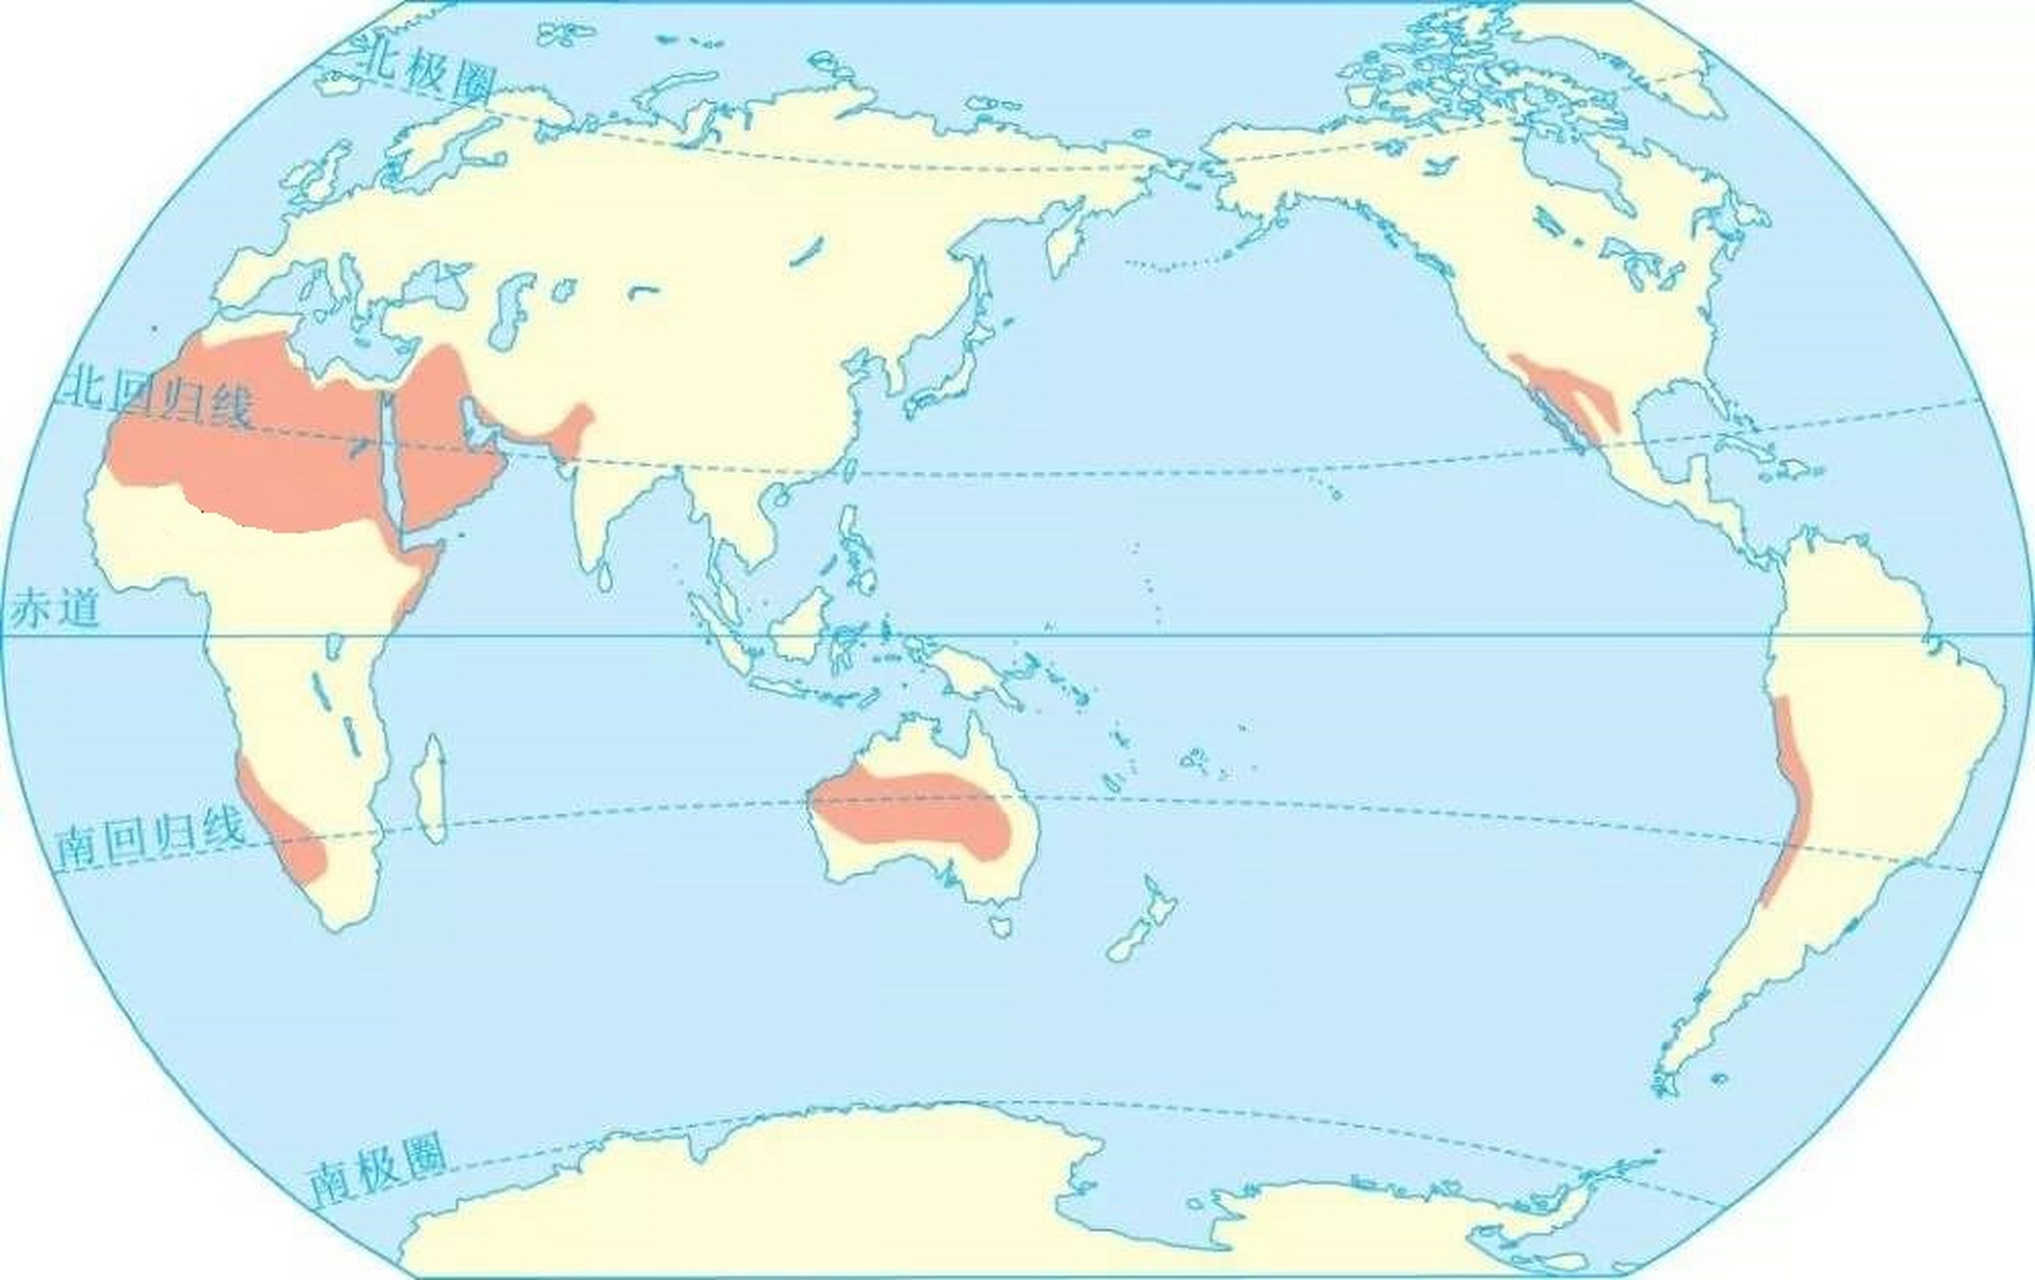 热带沙漠气候全球分布图 热带沙漠气候主要分布在南北纬20°至30